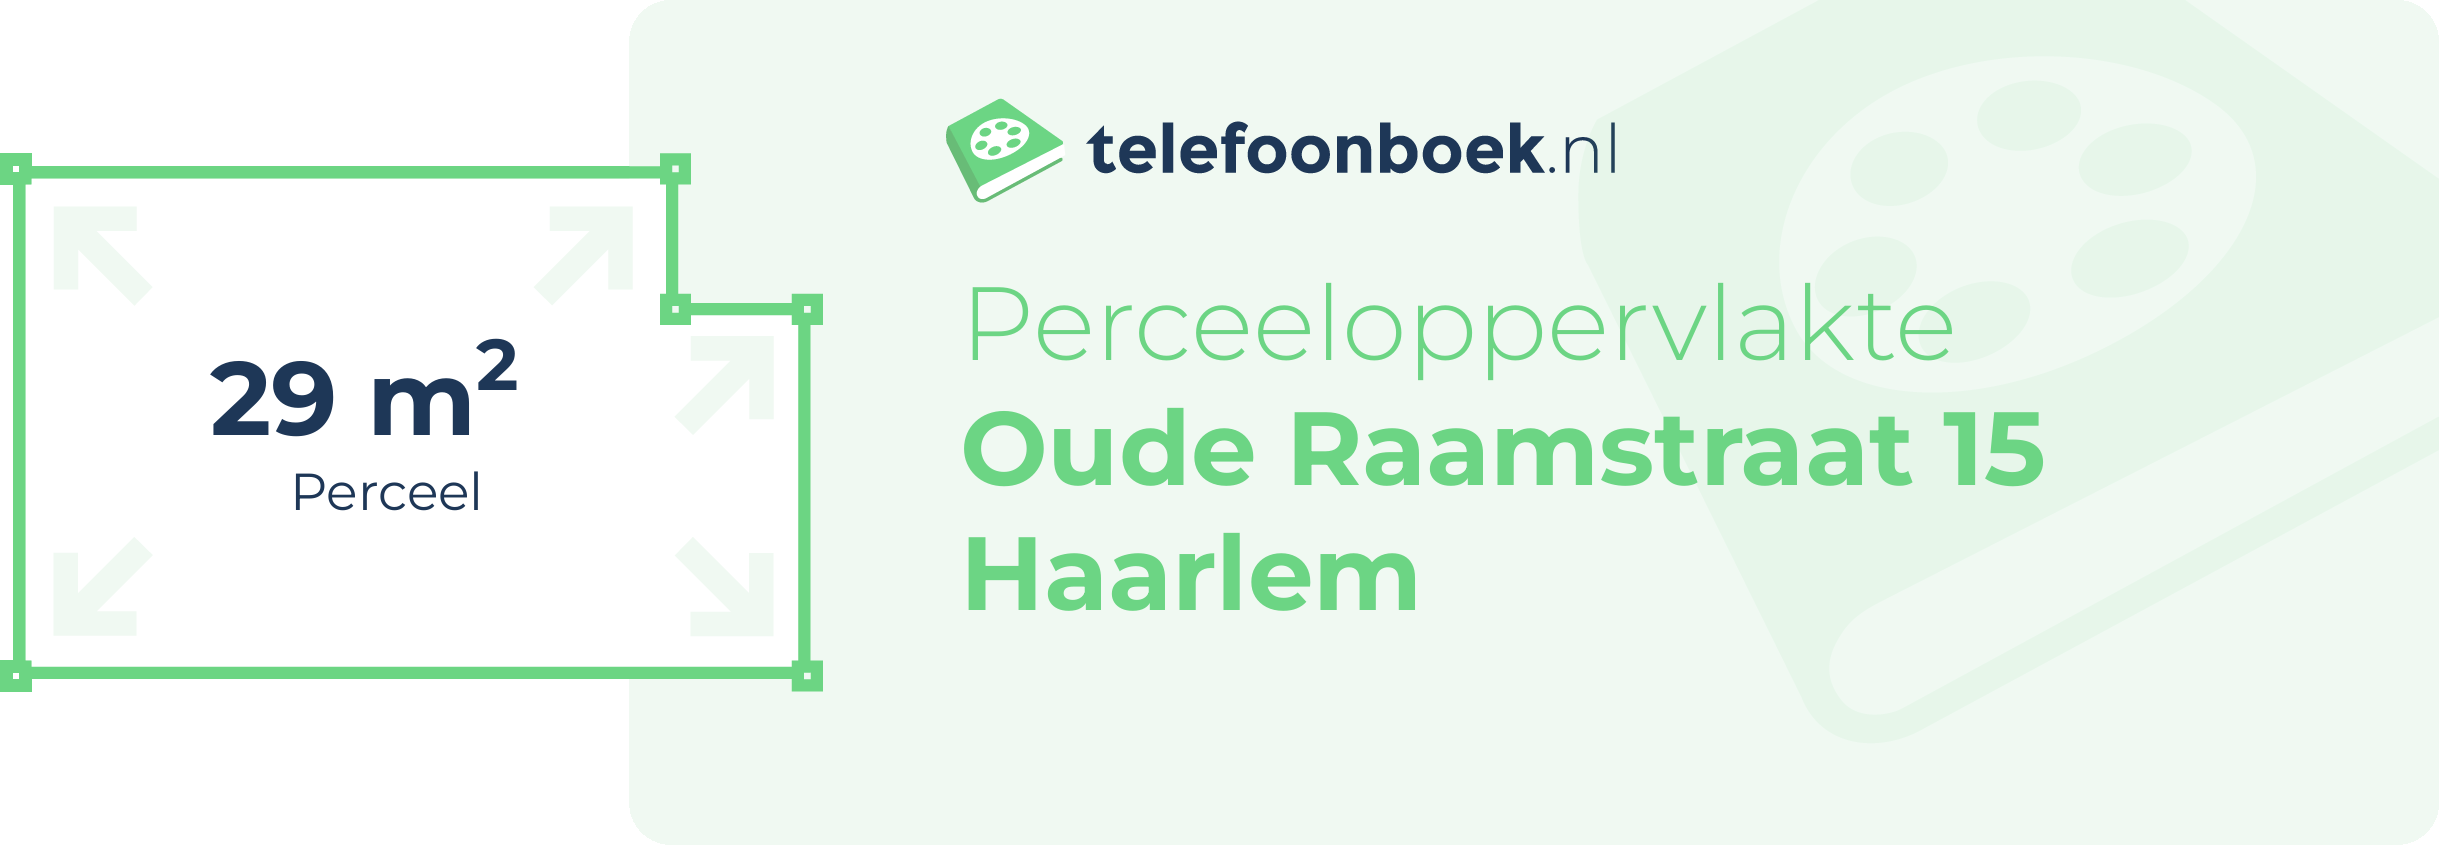 Perceeloppervlakte Oude Raamstraat 15 Haarlem